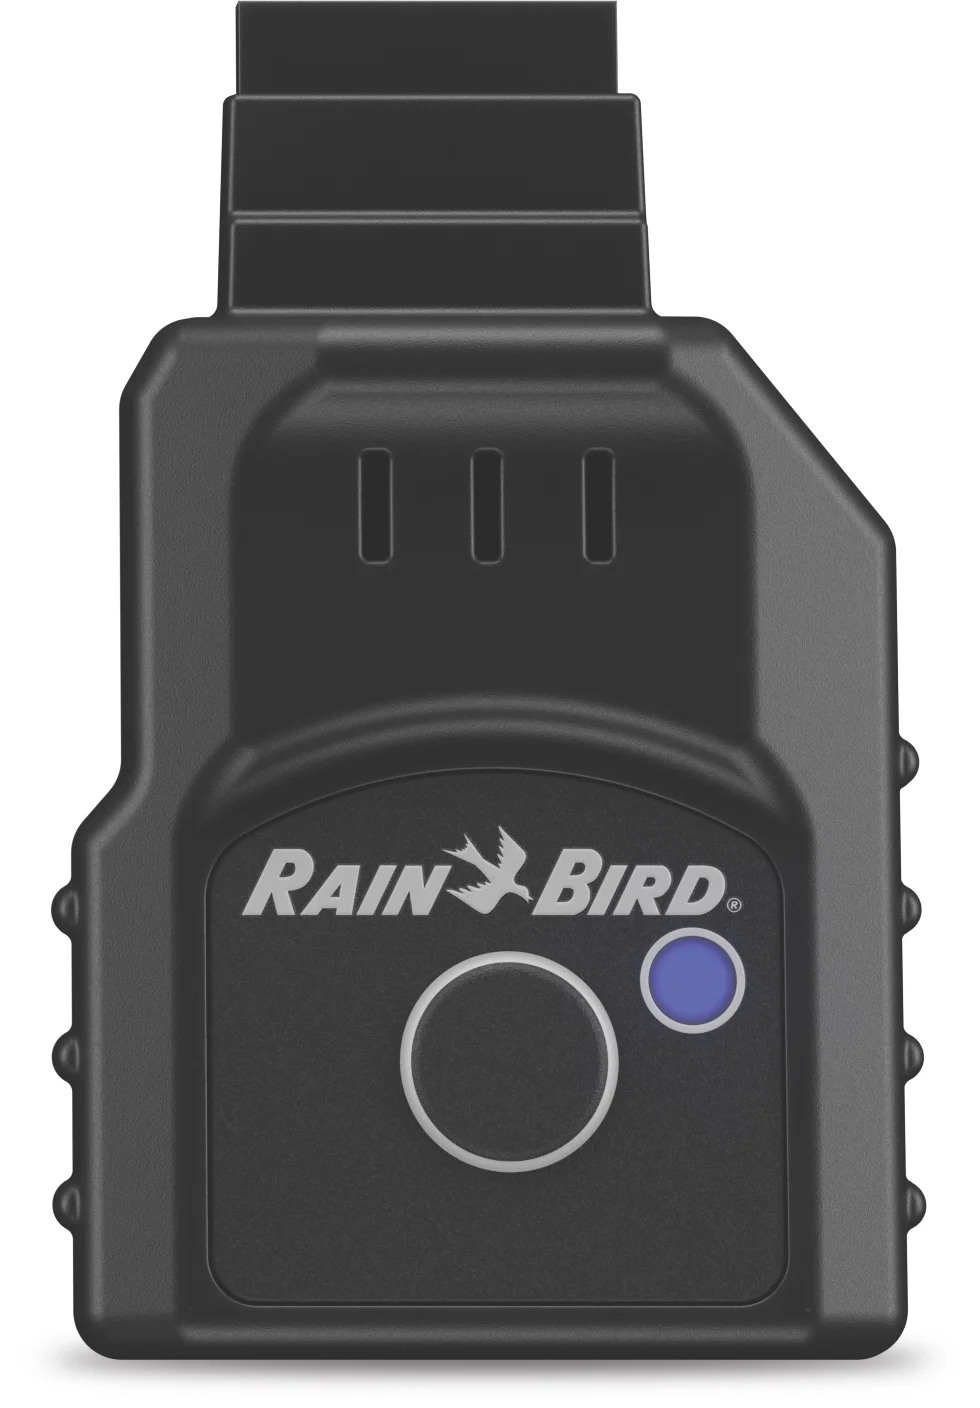 Moduł RAIN BIRD LNK2 Wi-Fi do sterownika Rain Bird